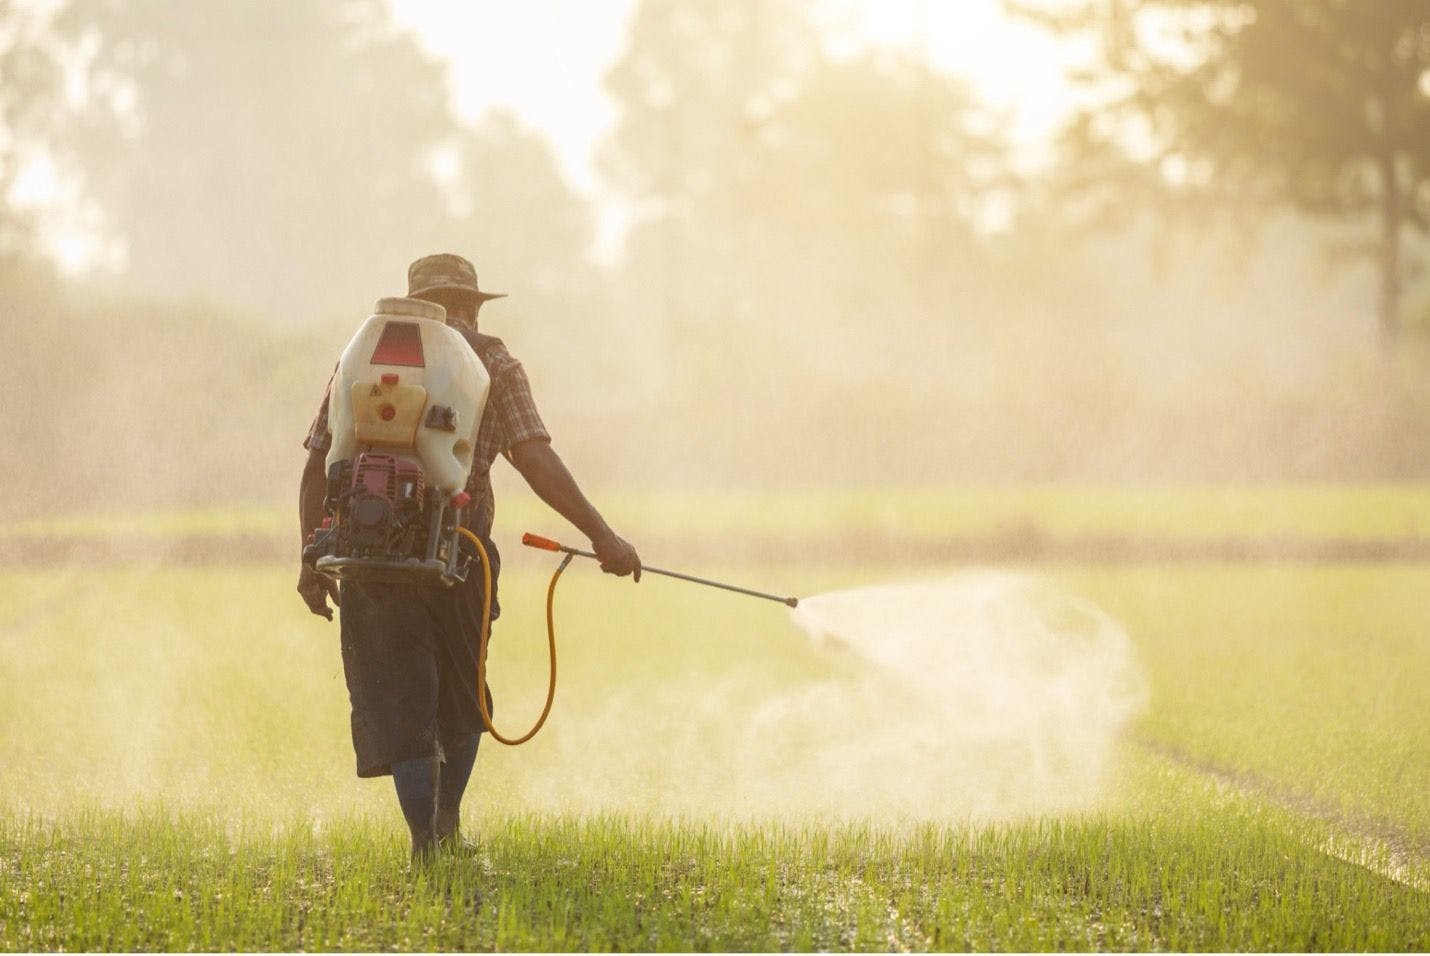 Farmer spraying pesticides: © SKT Studio - stock.adobe.com 

